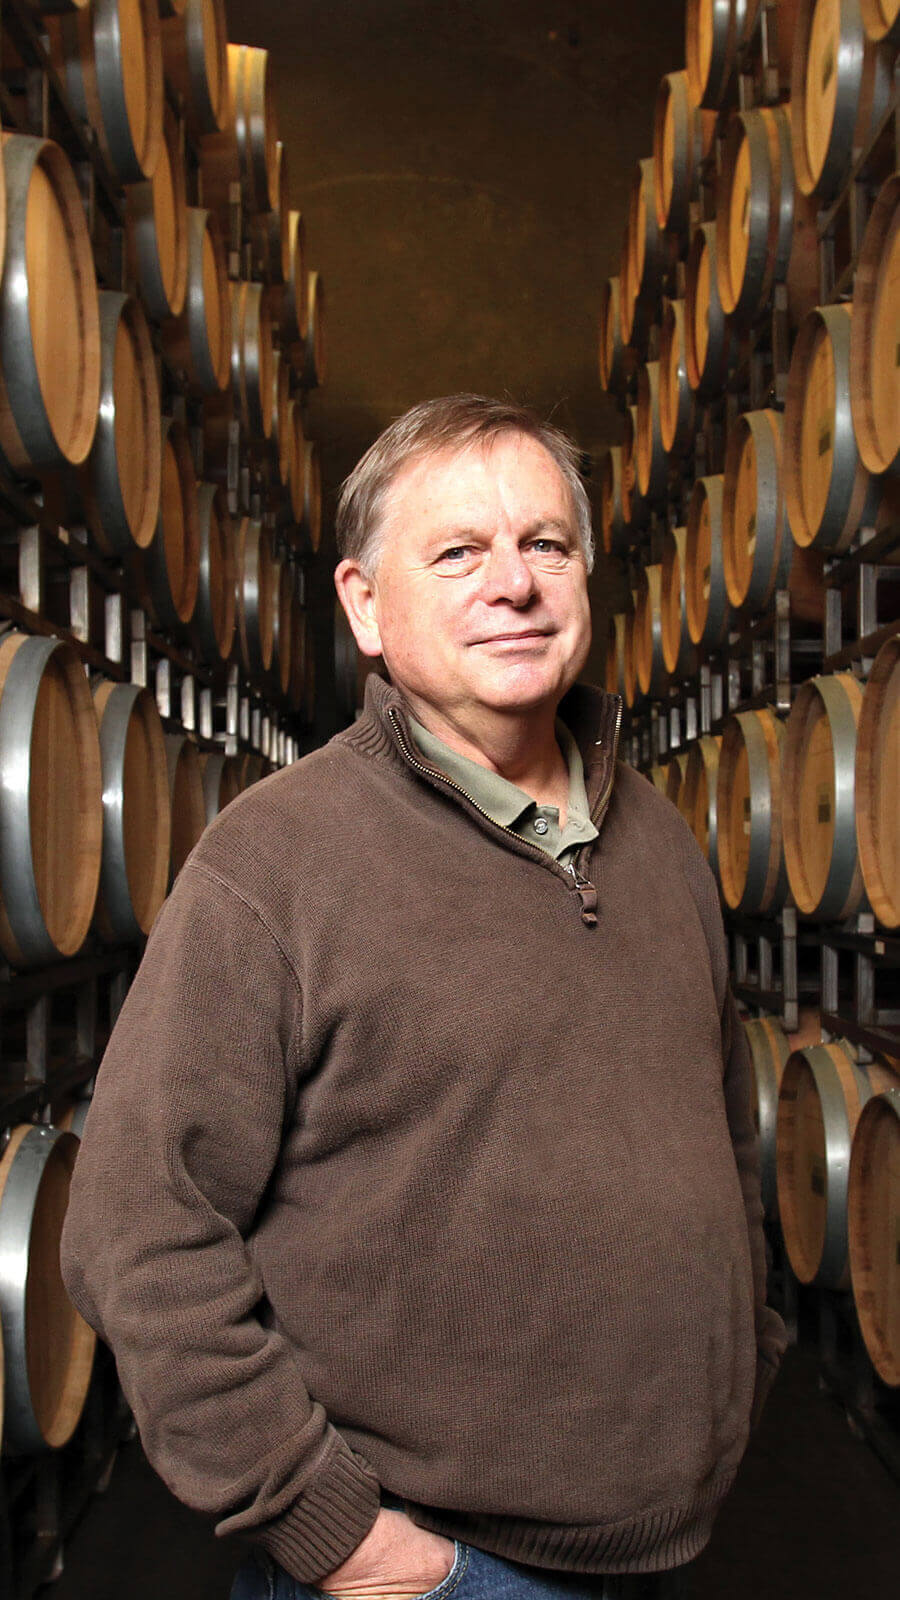 Washington winemaker Mike Januik